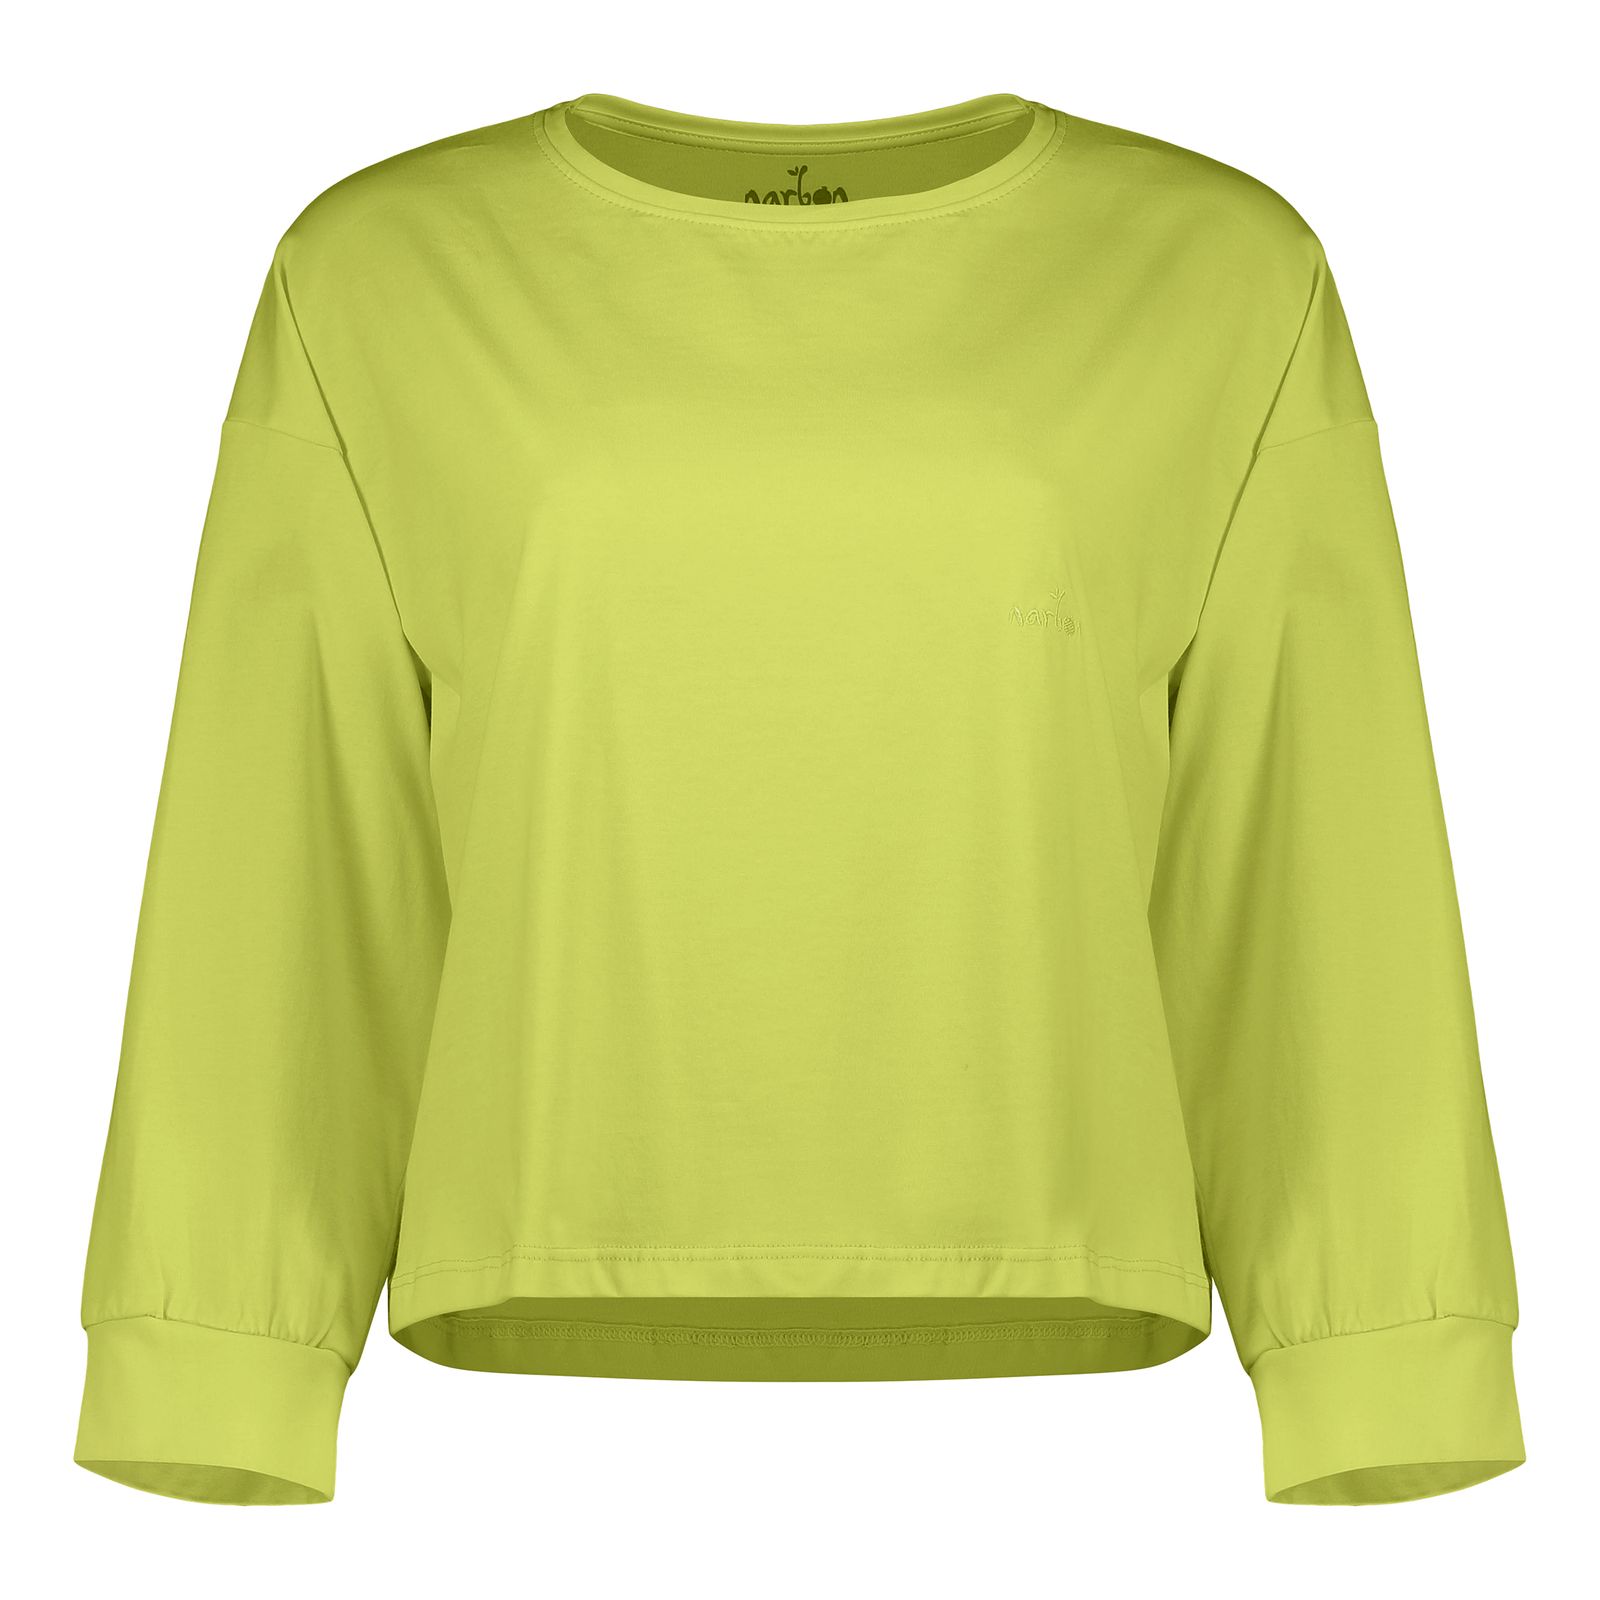 تی شرت آستین بلند زنانه ناربن مدل ترمه کد 3504 رنگ سبز پسته ای -  - 1